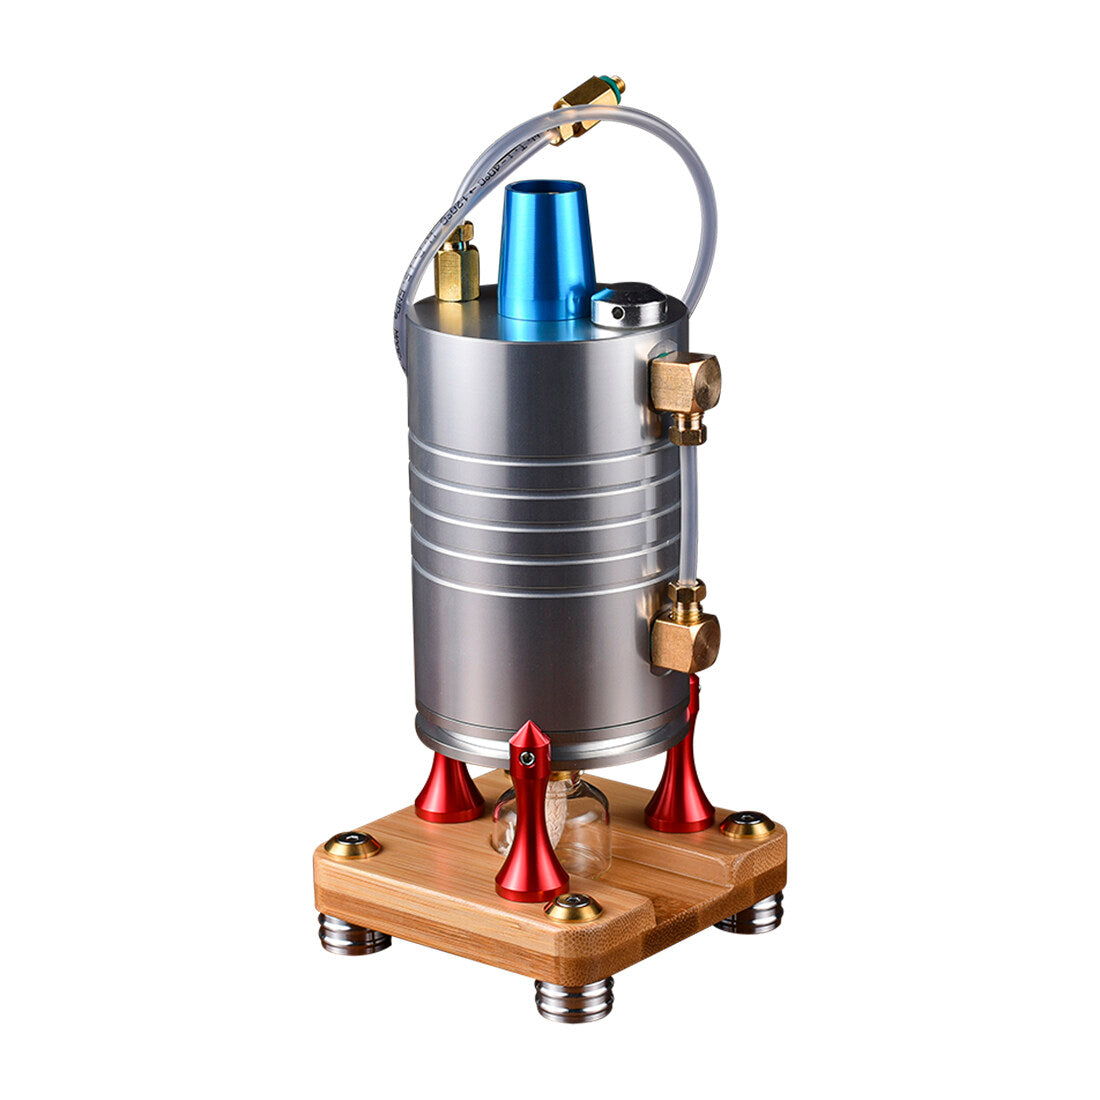 210ml Vrtikaler Dampfkessel-Modell für Dampfmaschine, RC-Autos und Schiffe 